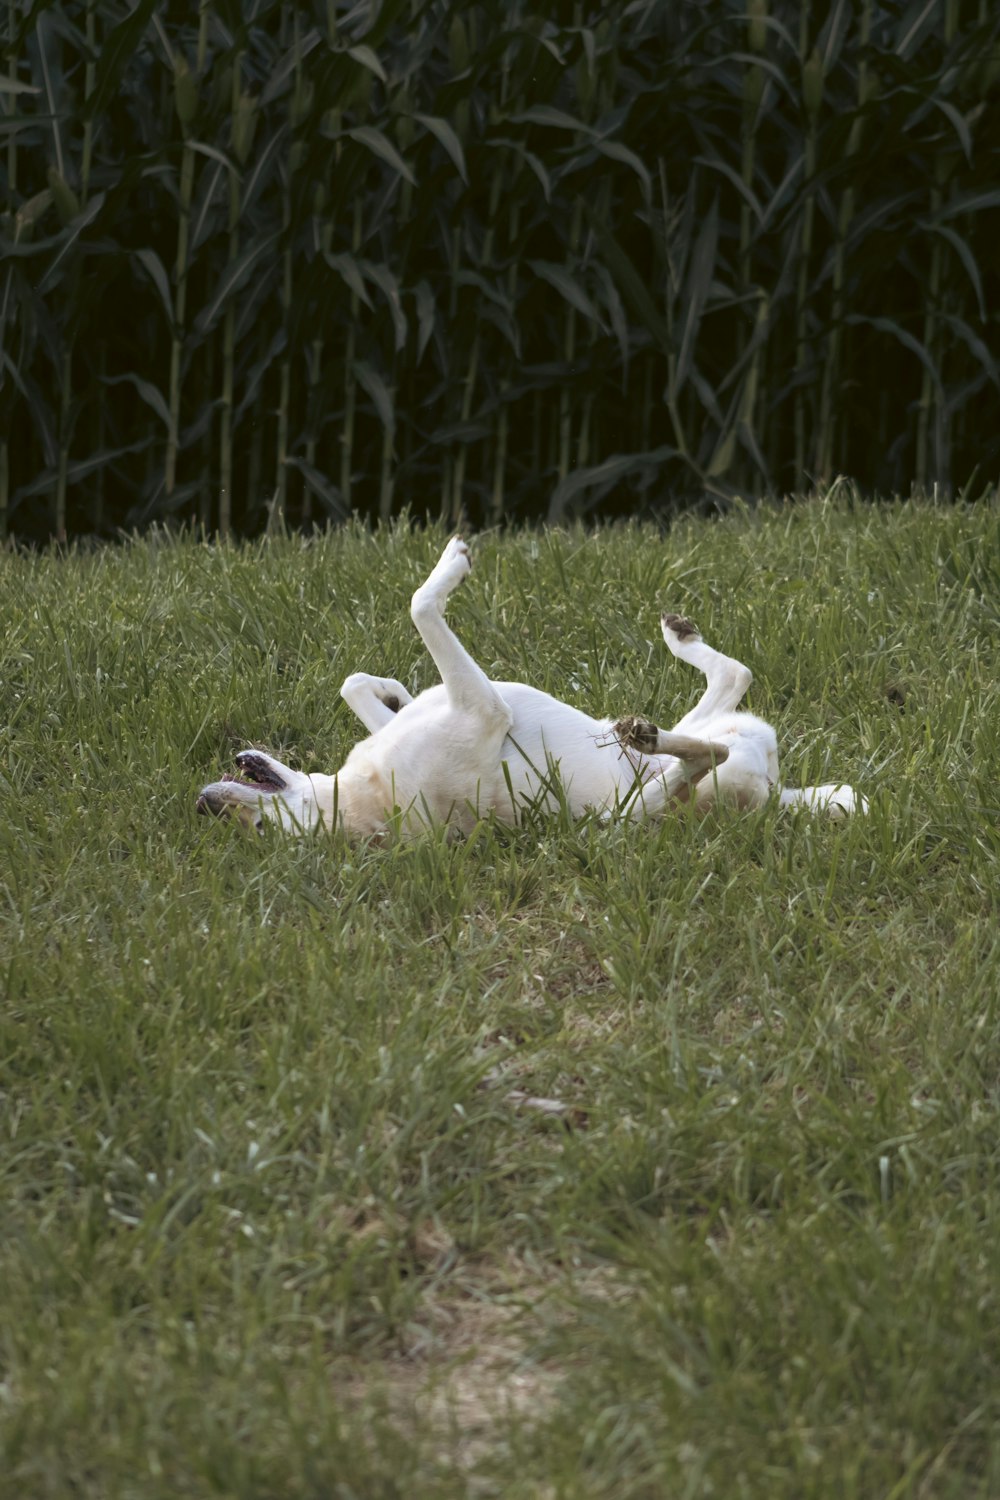 Un perro blanco rodando en la hierba